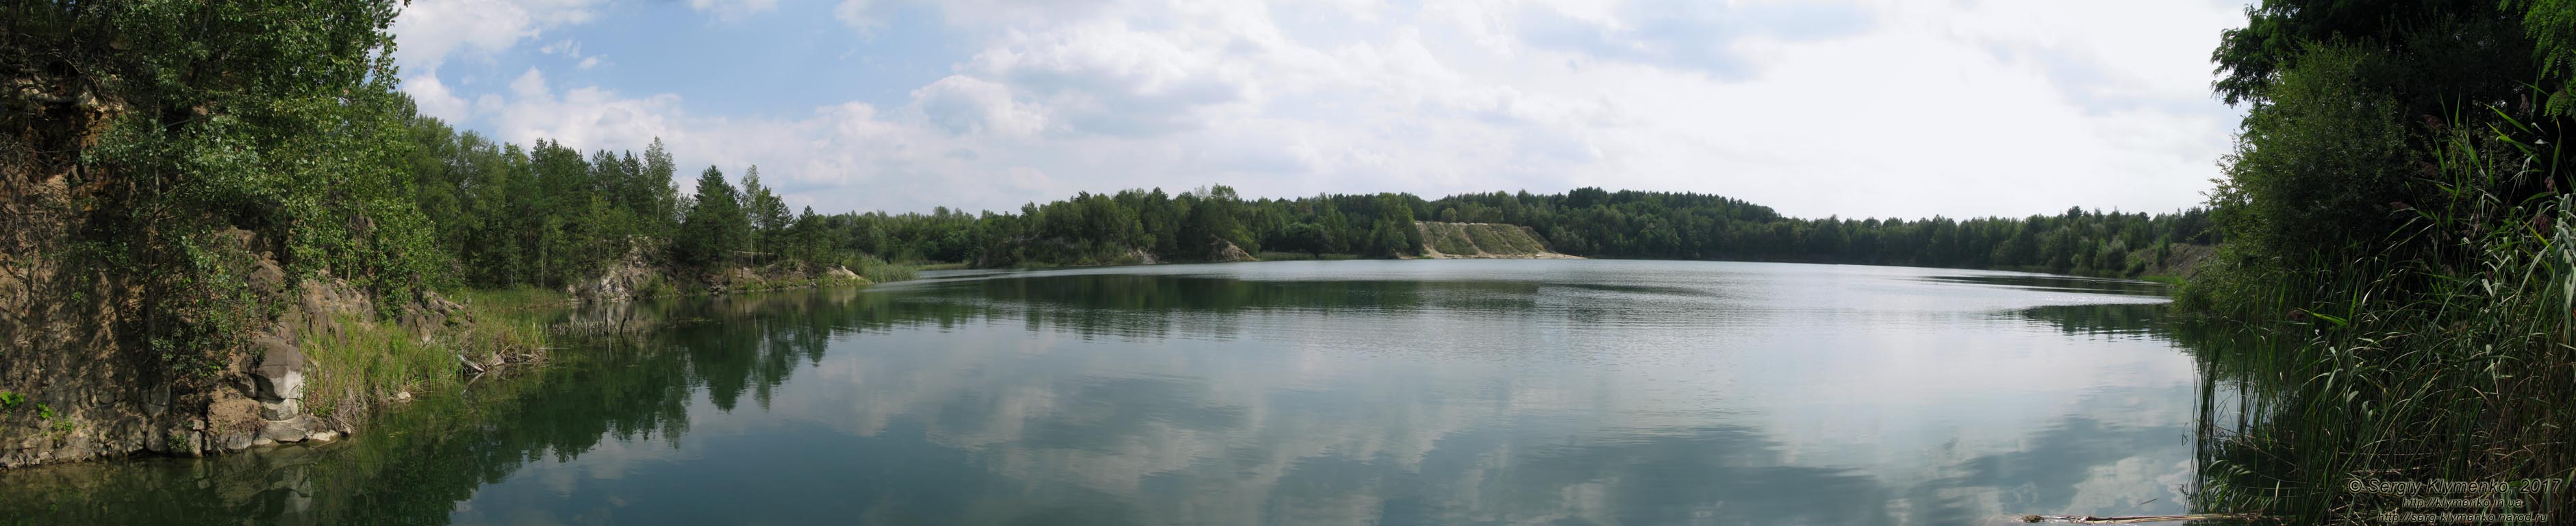 Ровенщина. Базальтовое. Фото. Затопленный водой базальтовый карьер (50°55'20.50"N, 26°13'49.00"E), панорама ~240°.